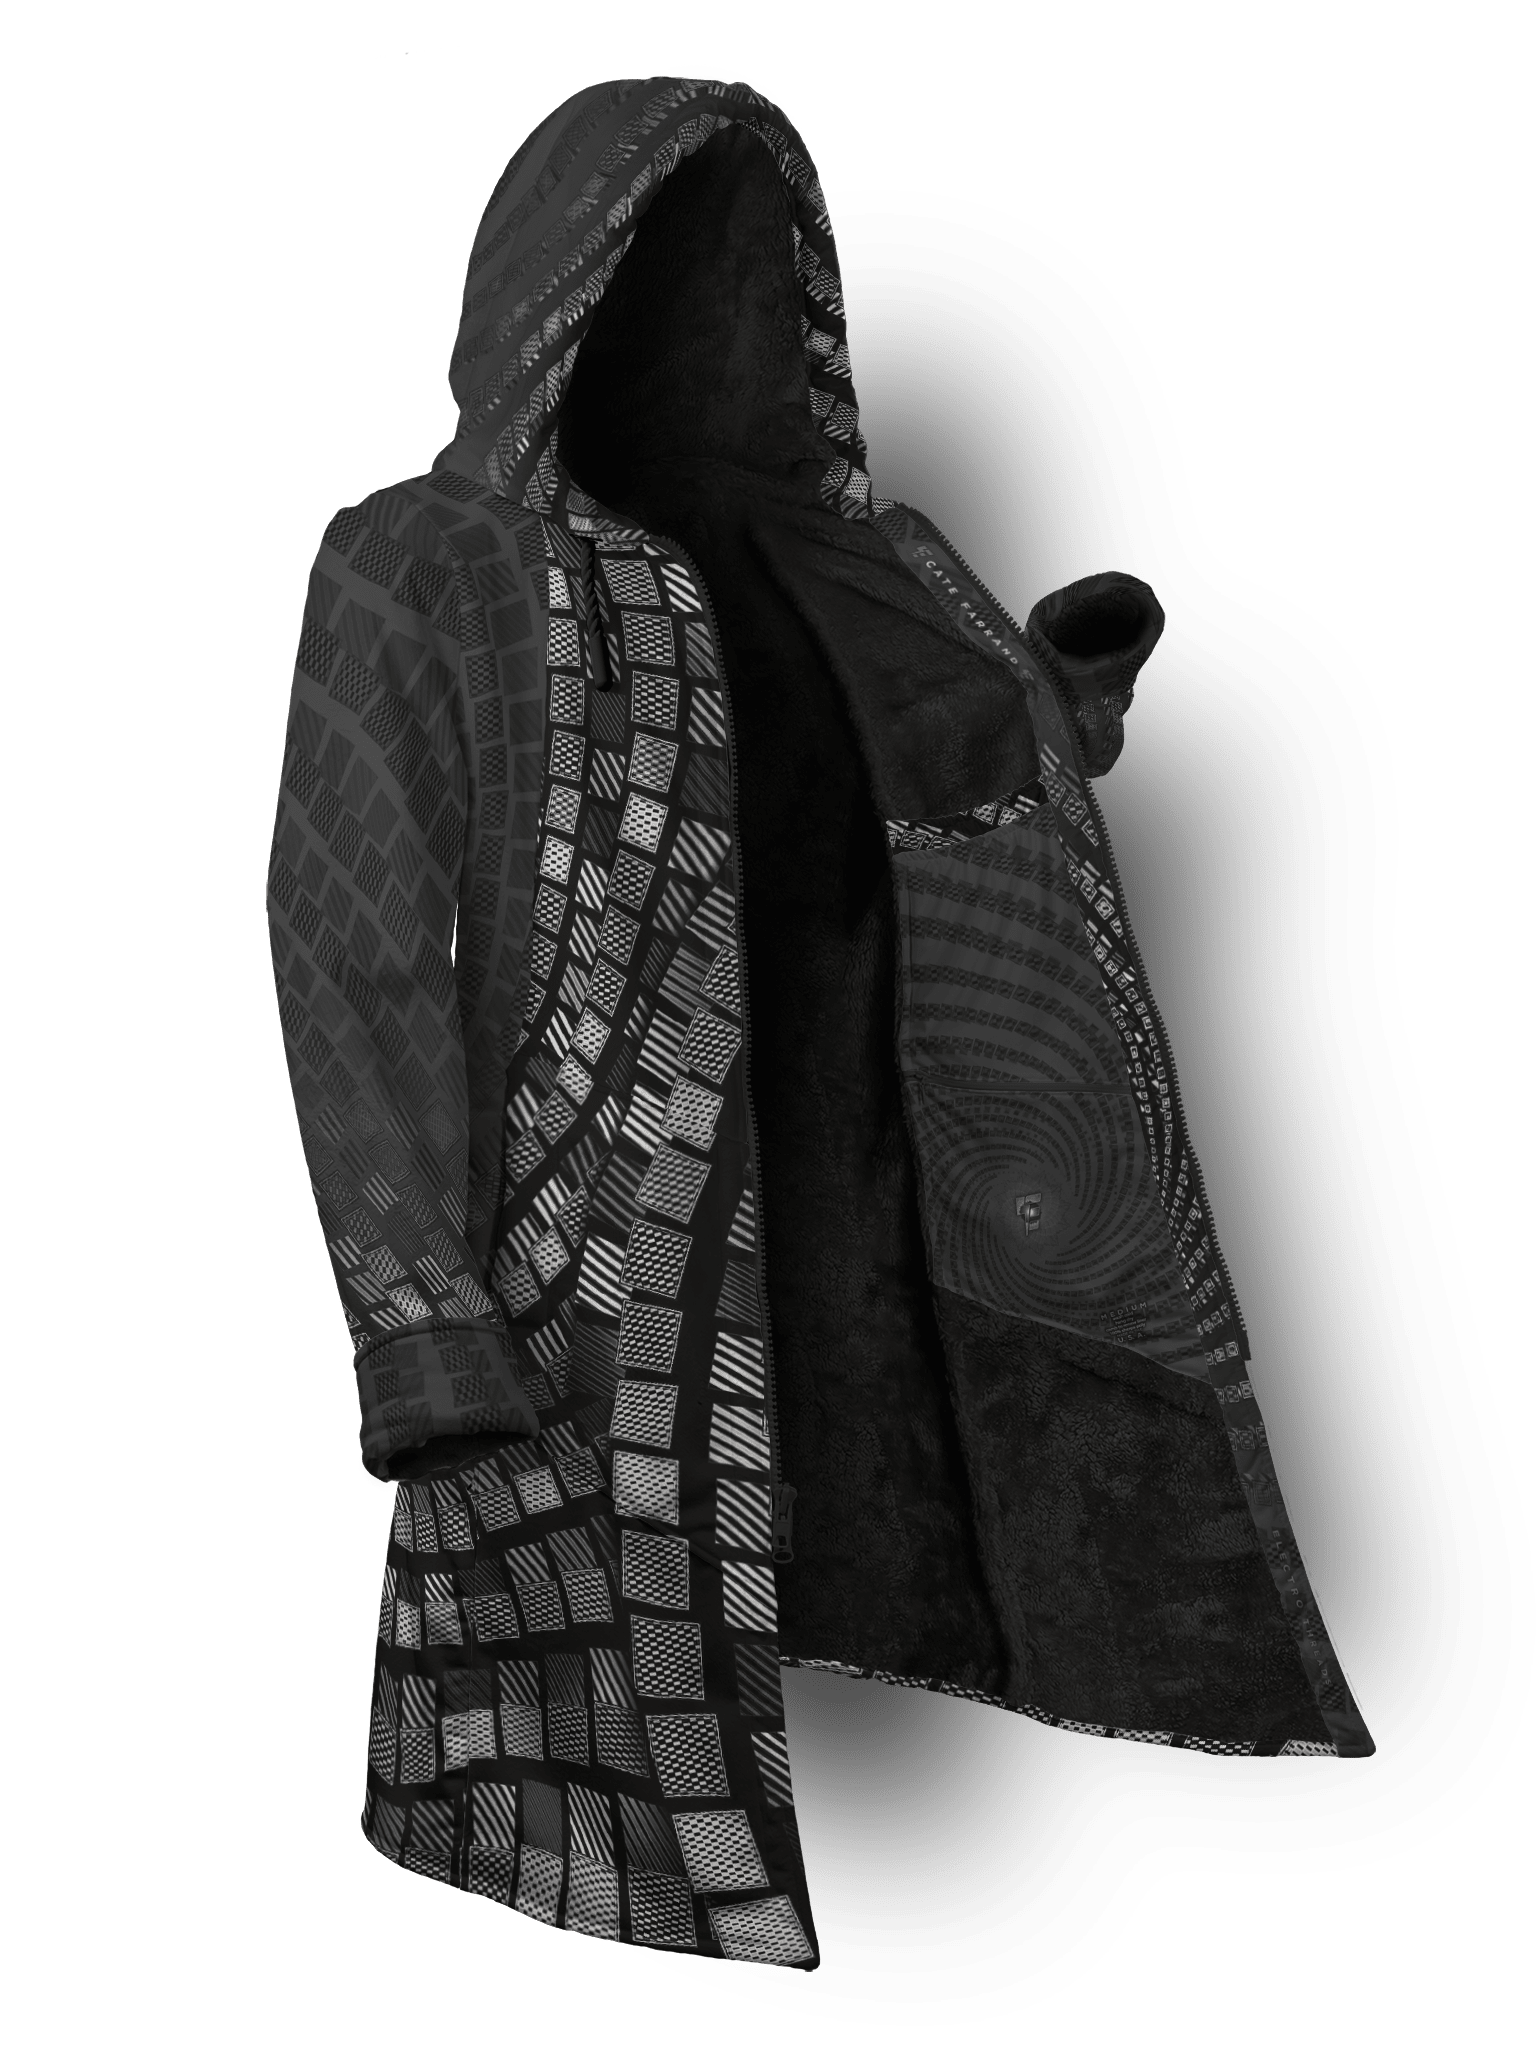 Radiate Cate Cyber Cloak Cyber Cloak TCG Long Sleeve-No Bag XX-Small Black Sherpa